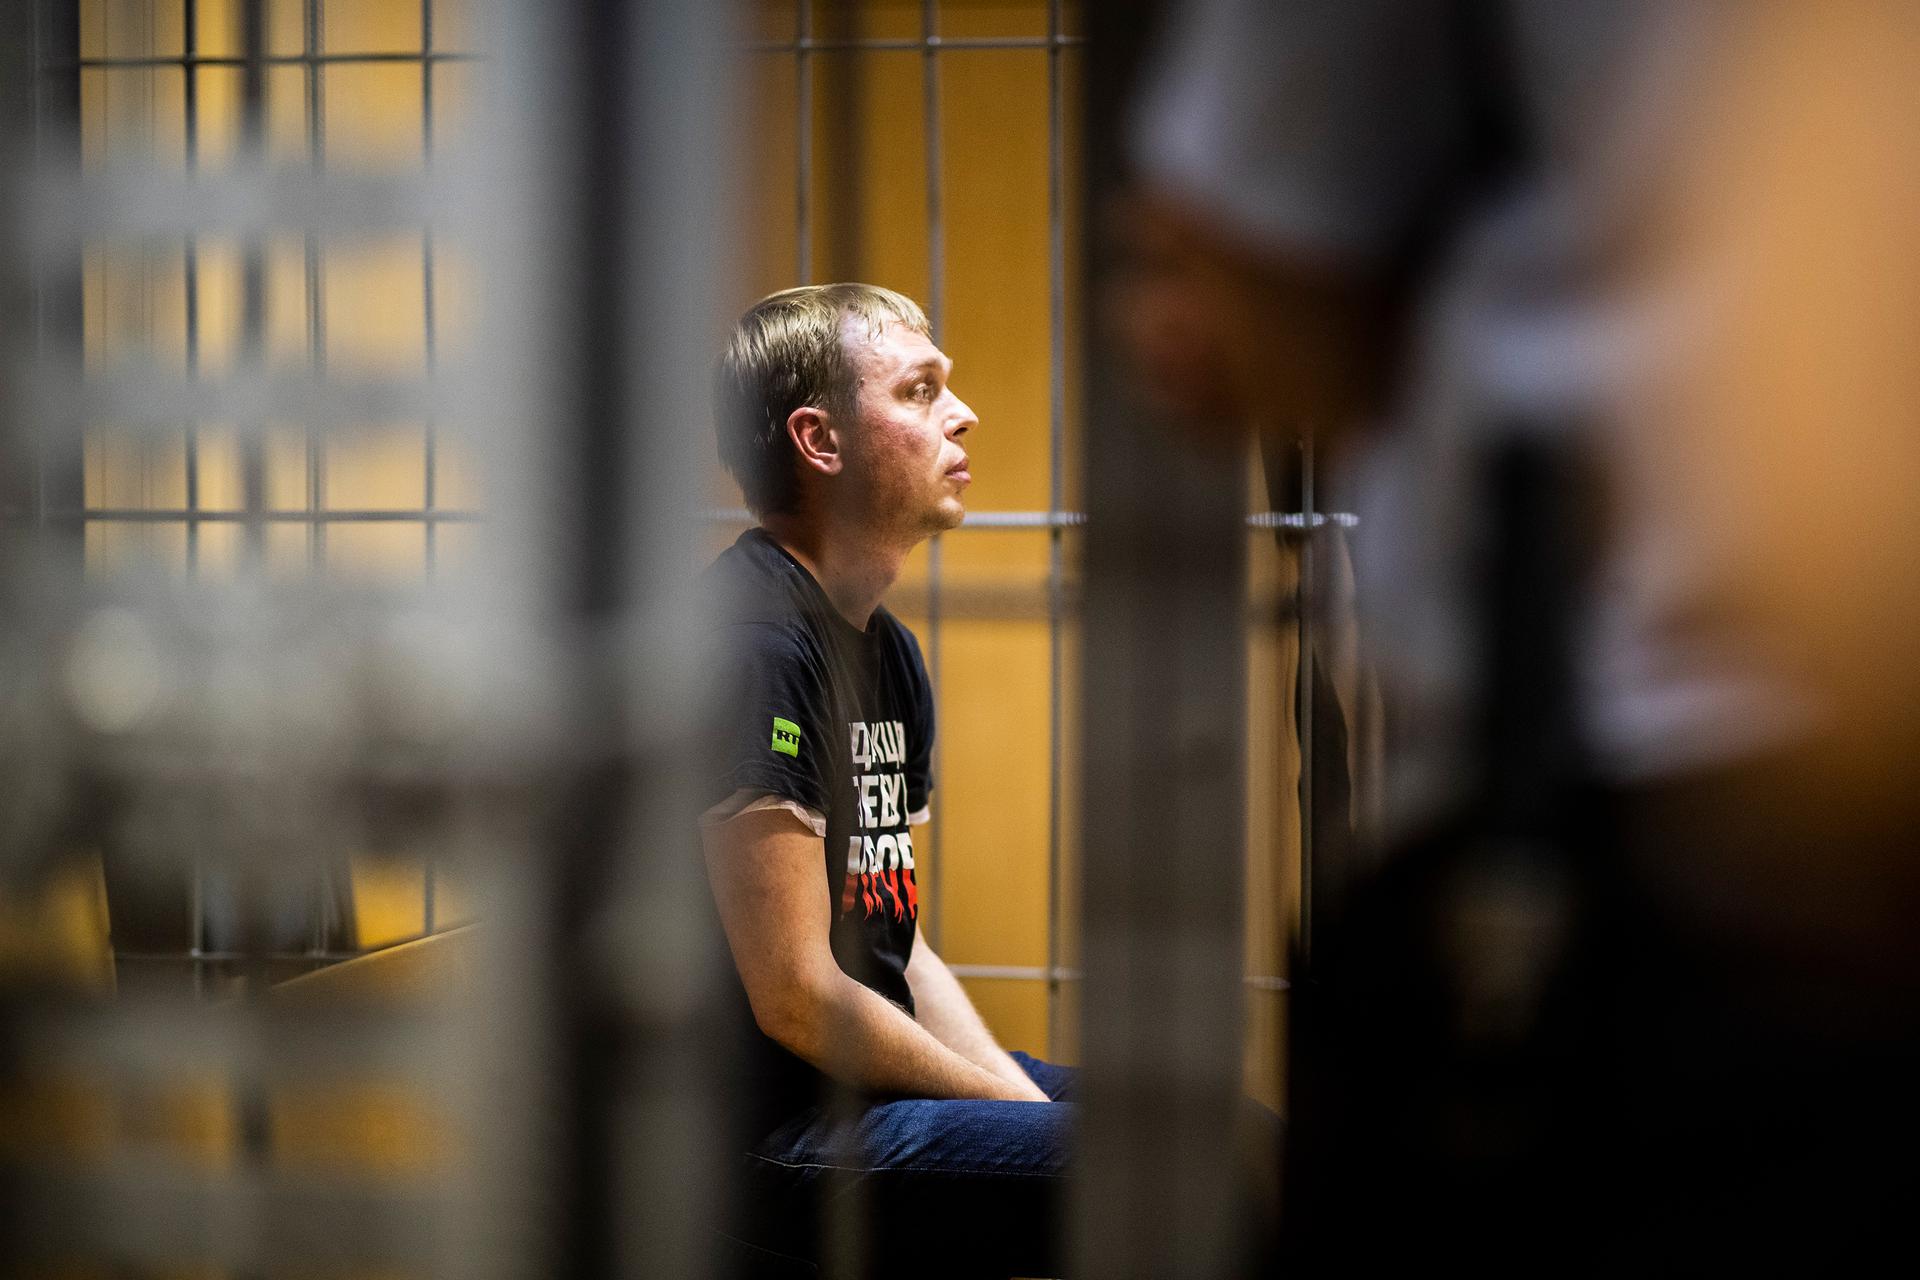 A man sits behind bars